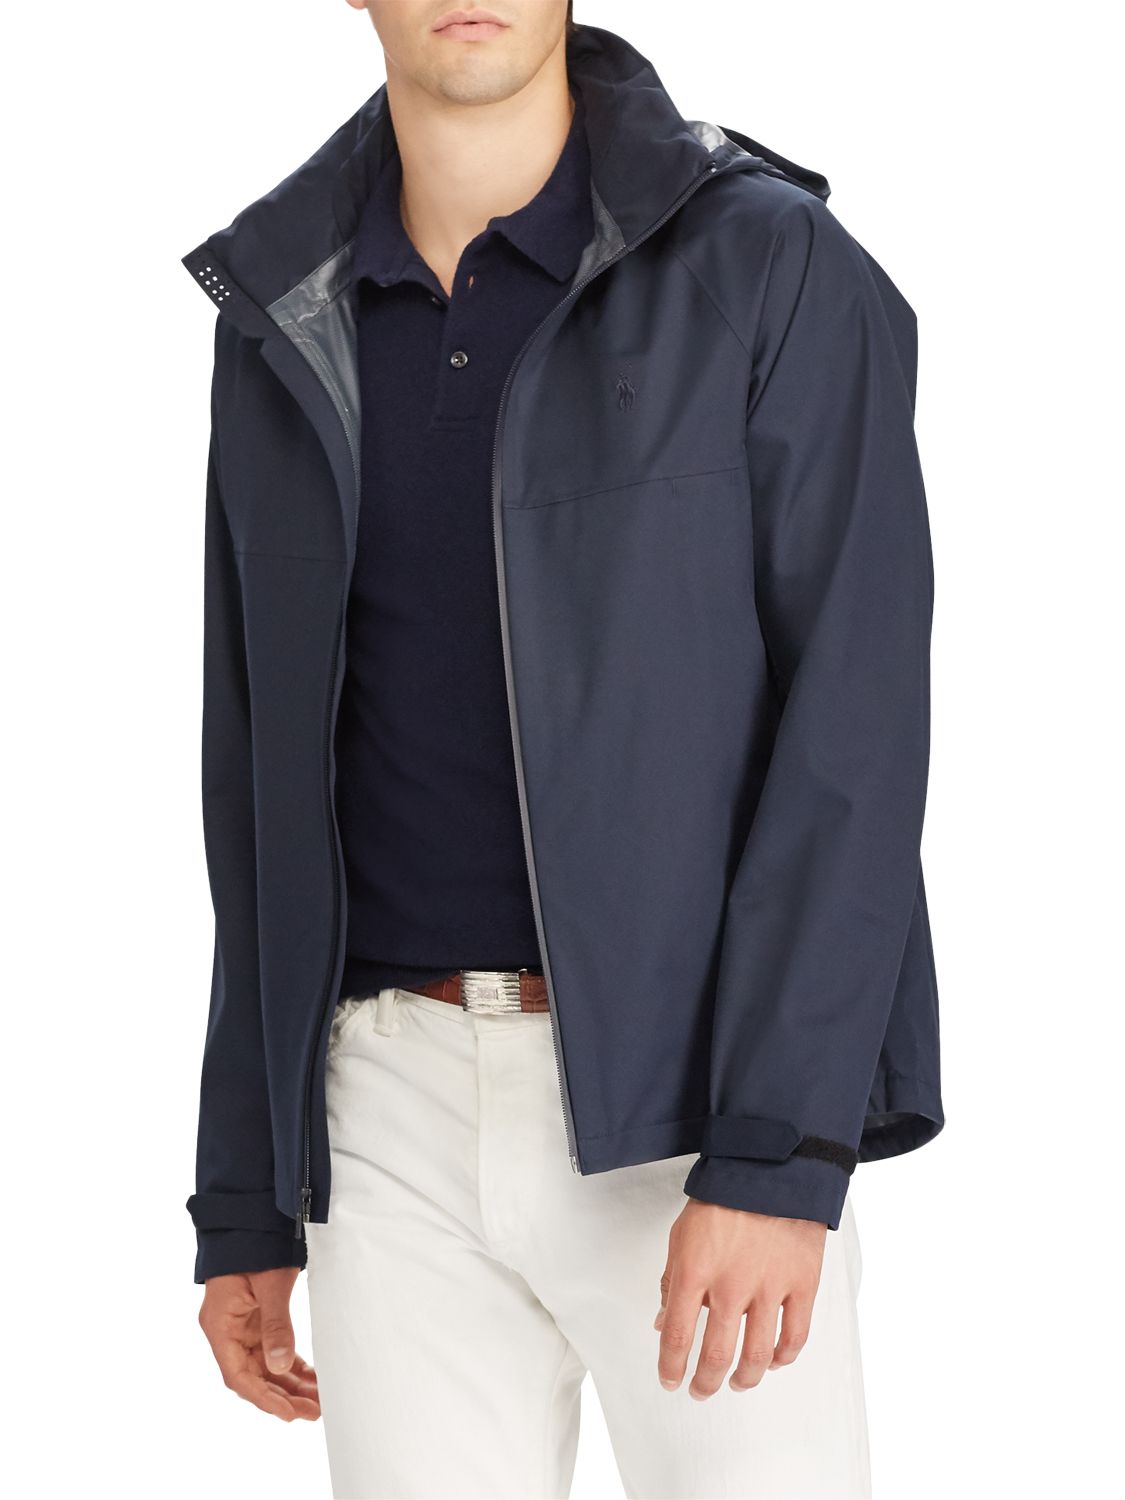 polo ralph lauren windbreaker hooded jacket